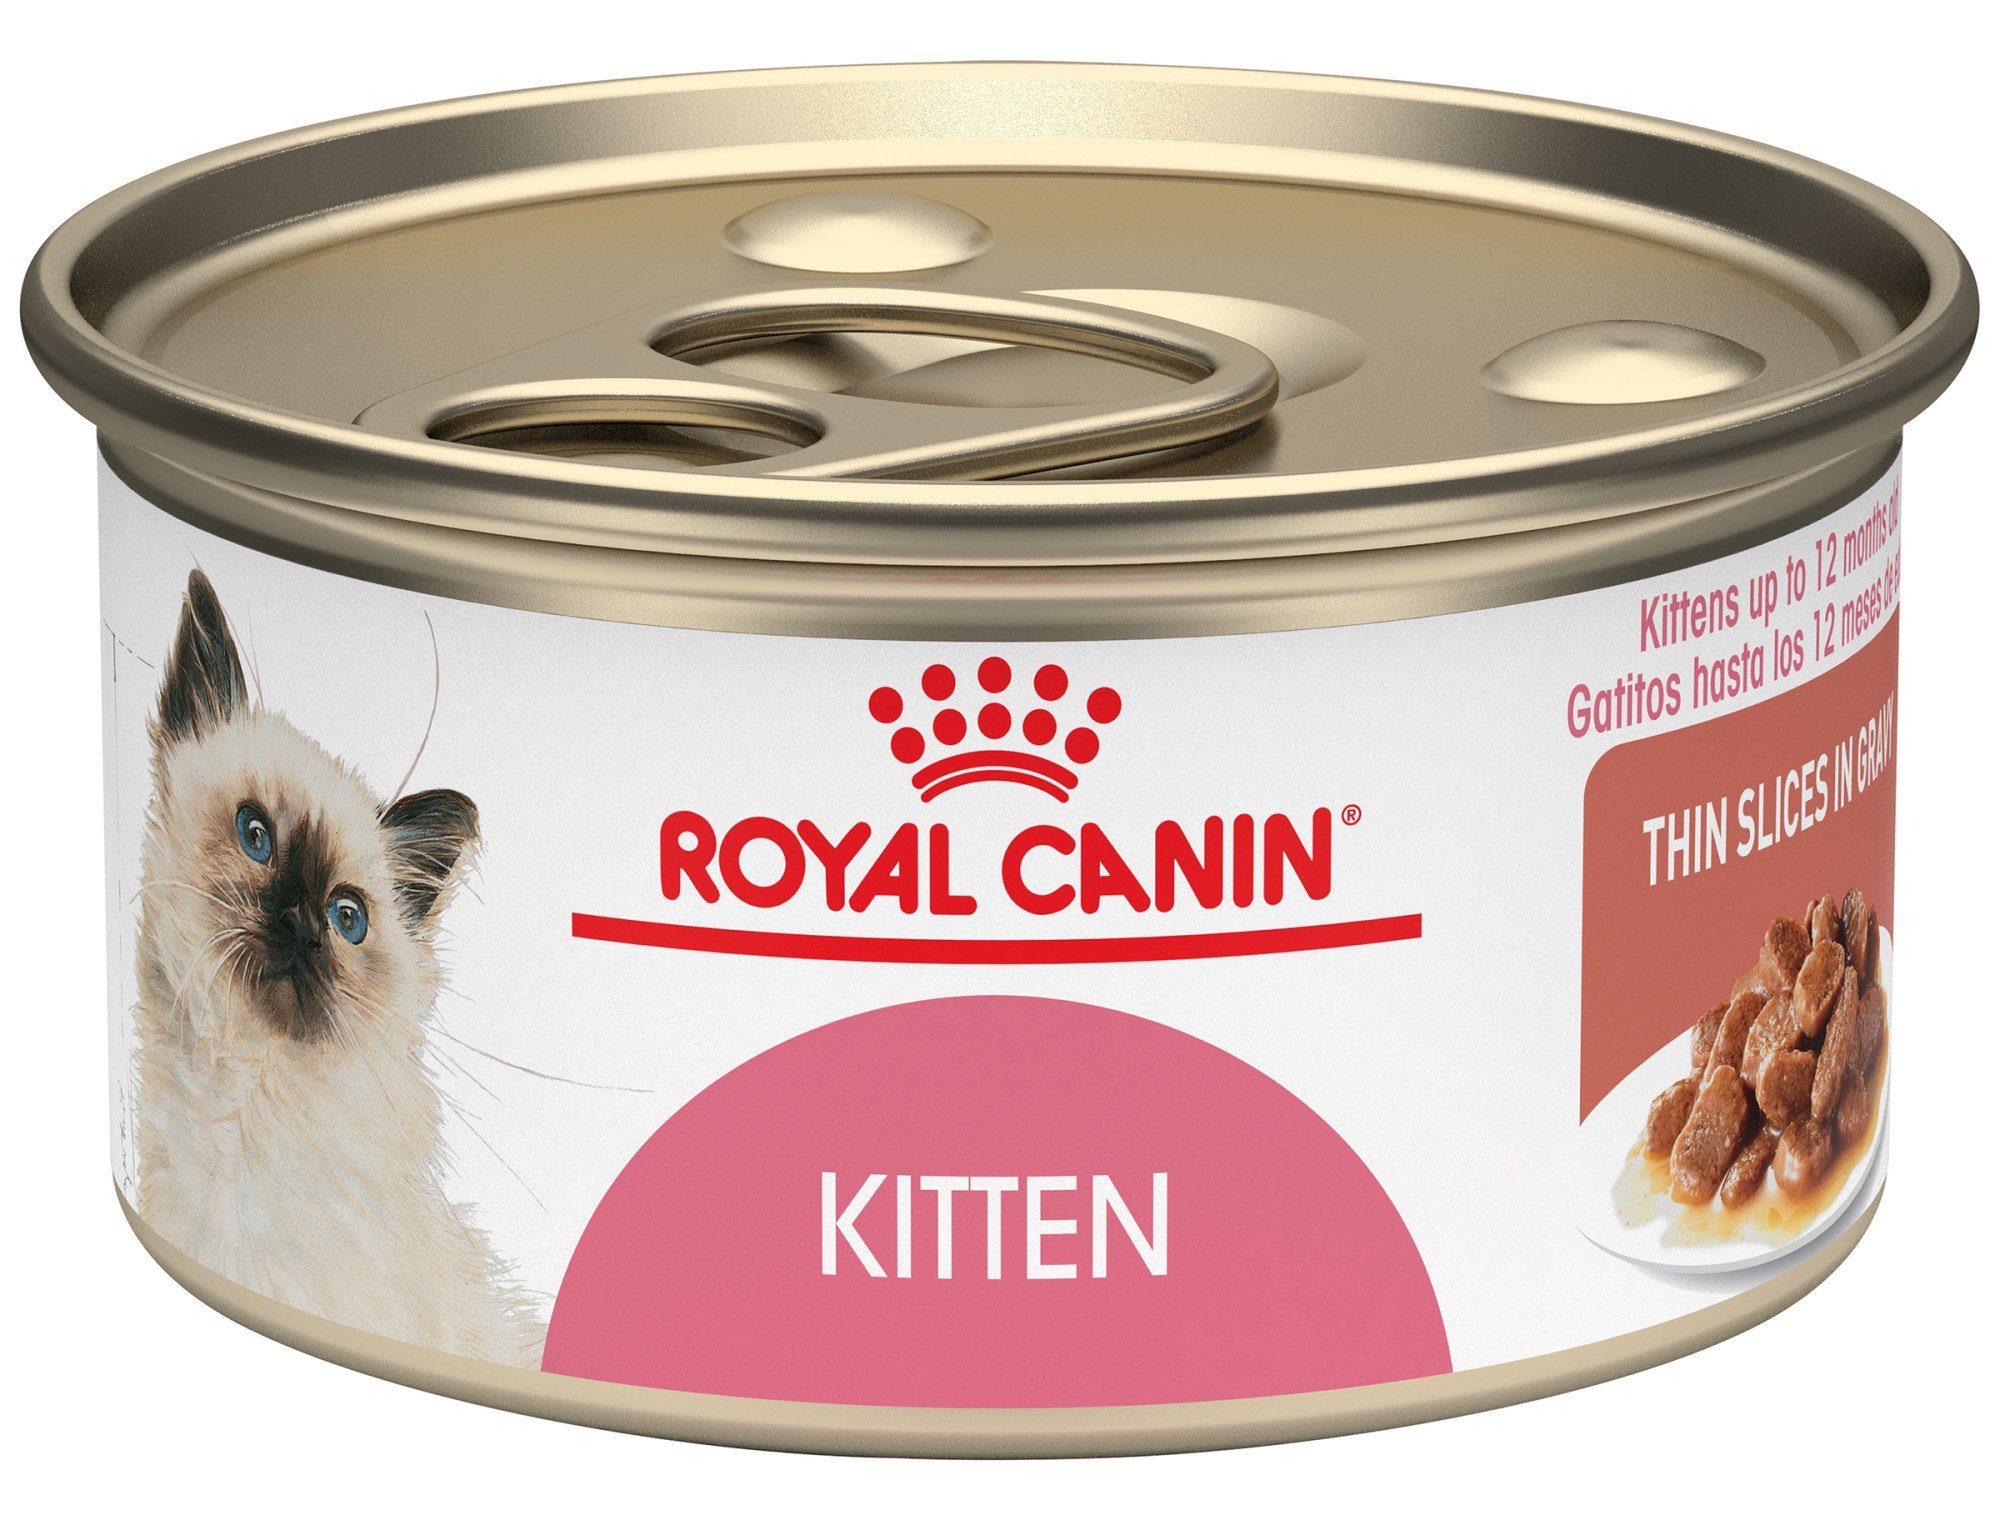 royal canin siberian cat